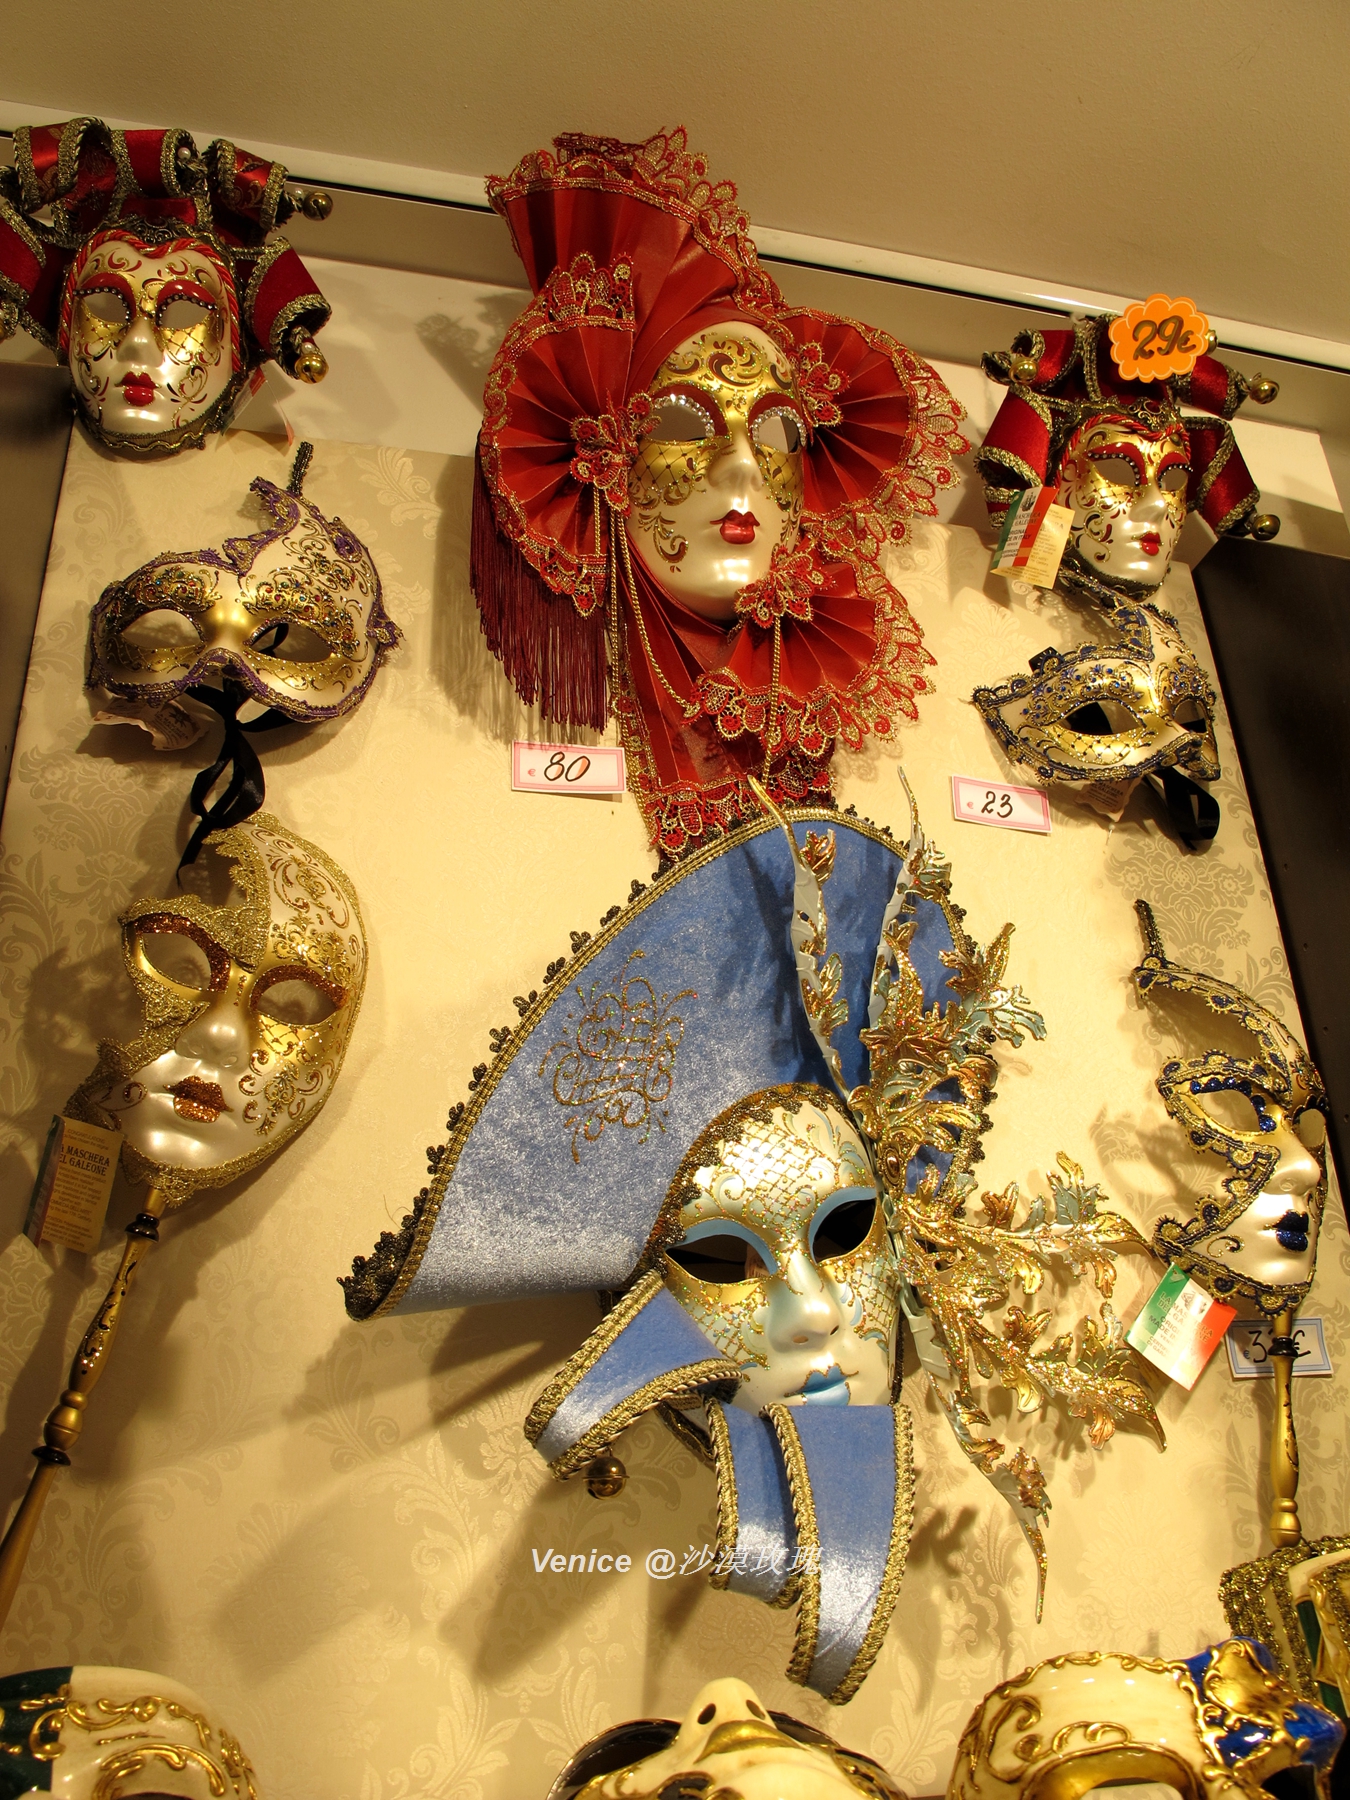 威尼斯面具主要分为狂欢节面具(carnival masks)和即兴艺术喜剧